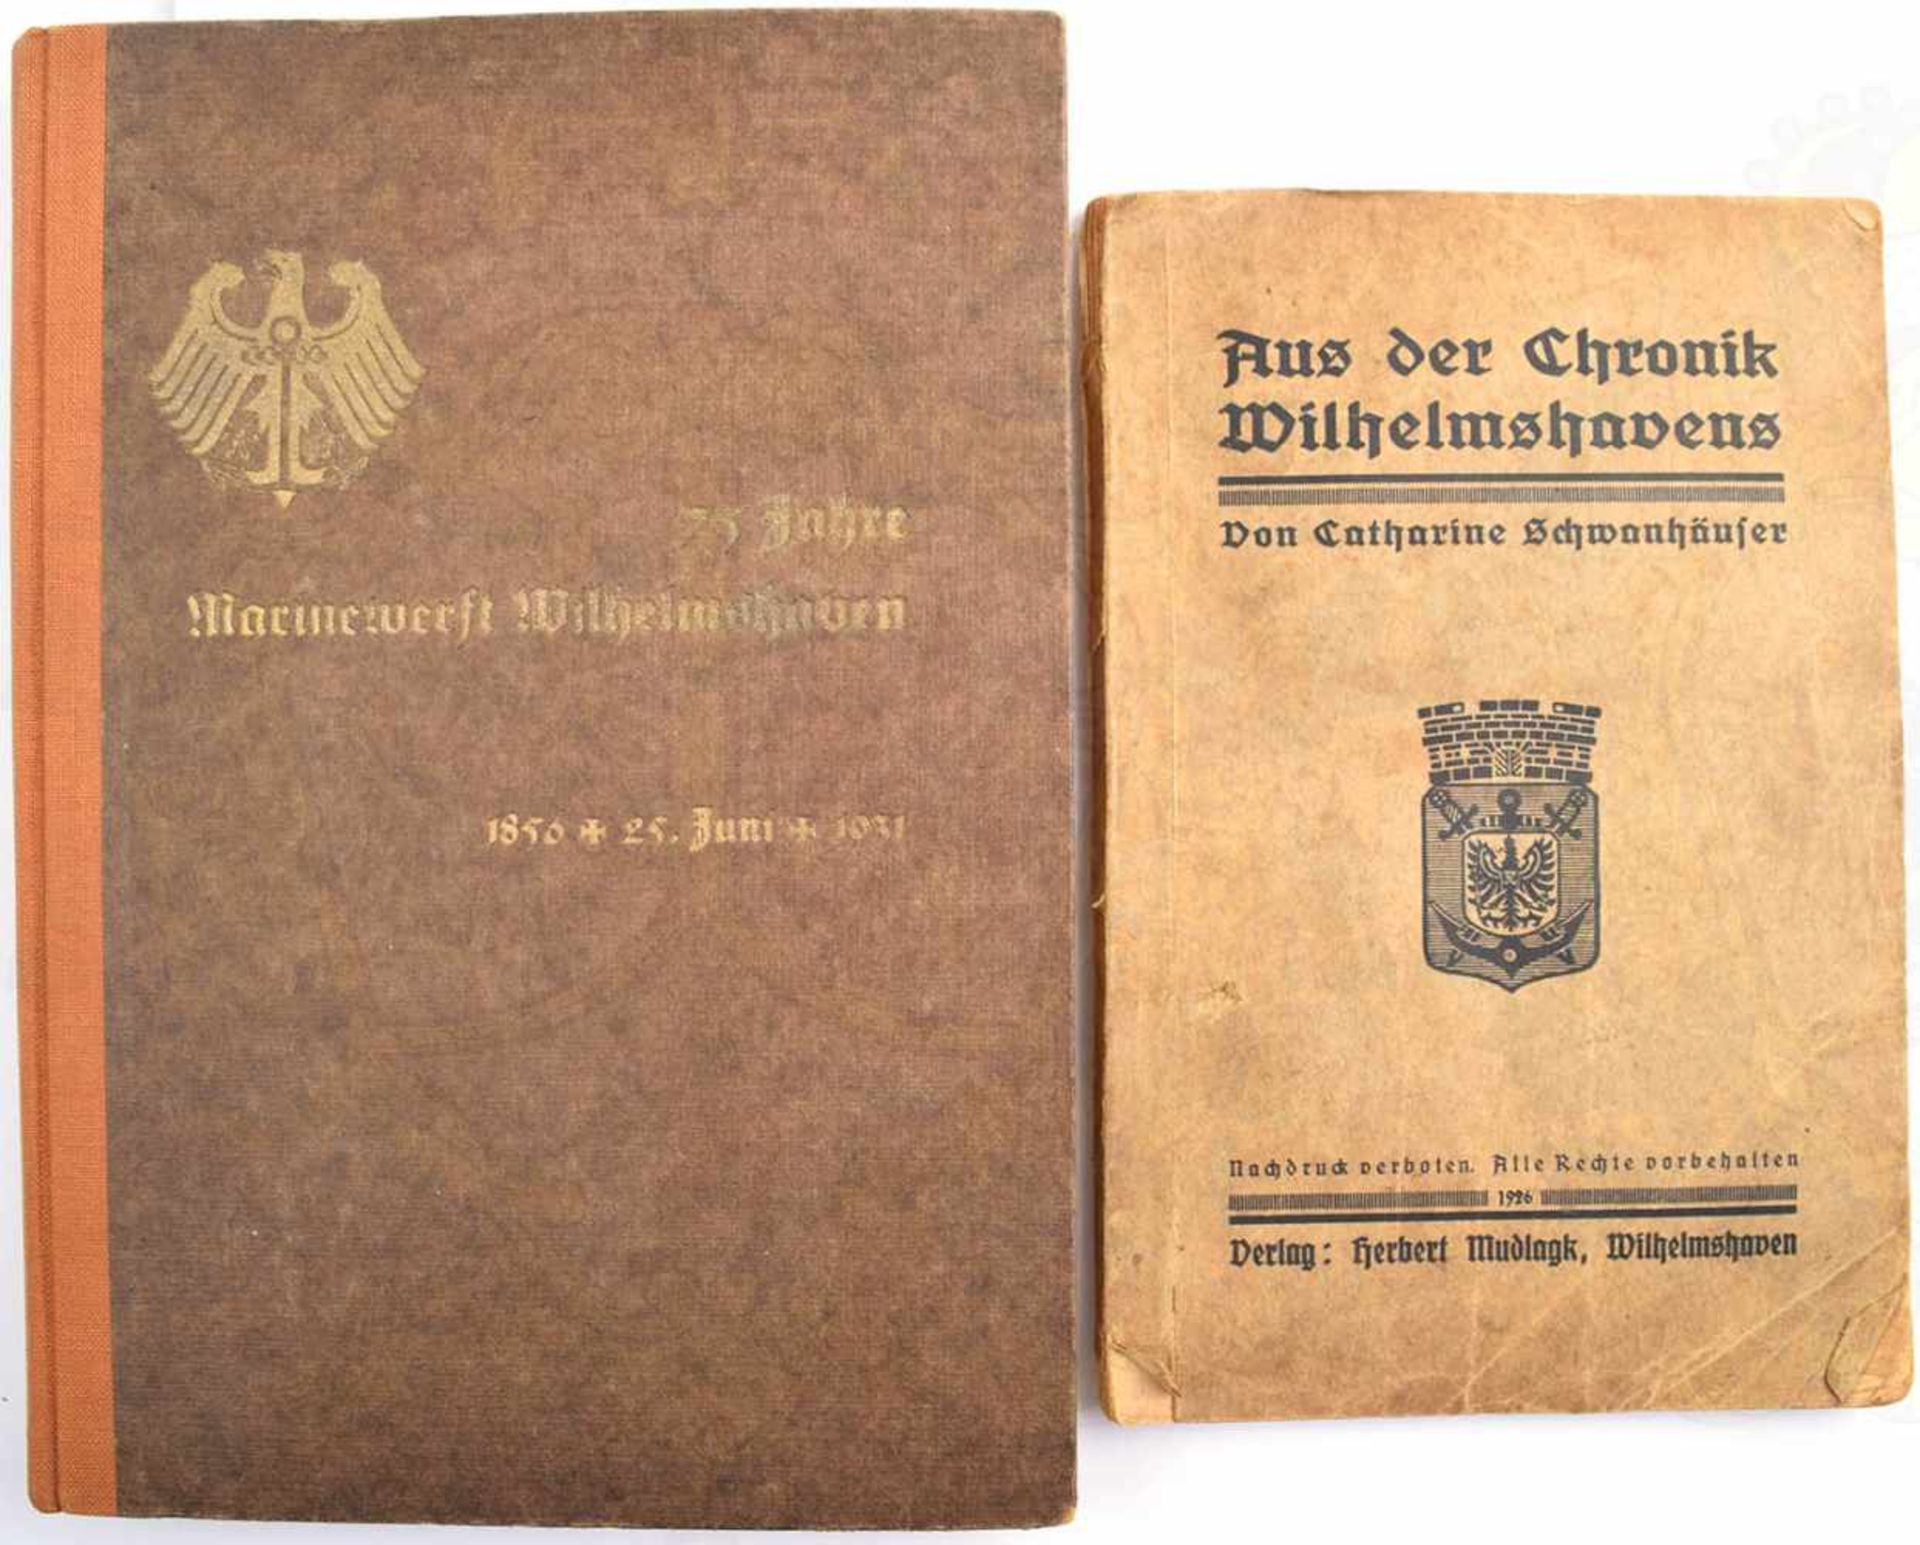 2 TITEL WILHELMSHAVEN, 75 Jahre Marinewerft Wilhelmshaven 1931, 99 S., Fotos, Verzeichnis d.